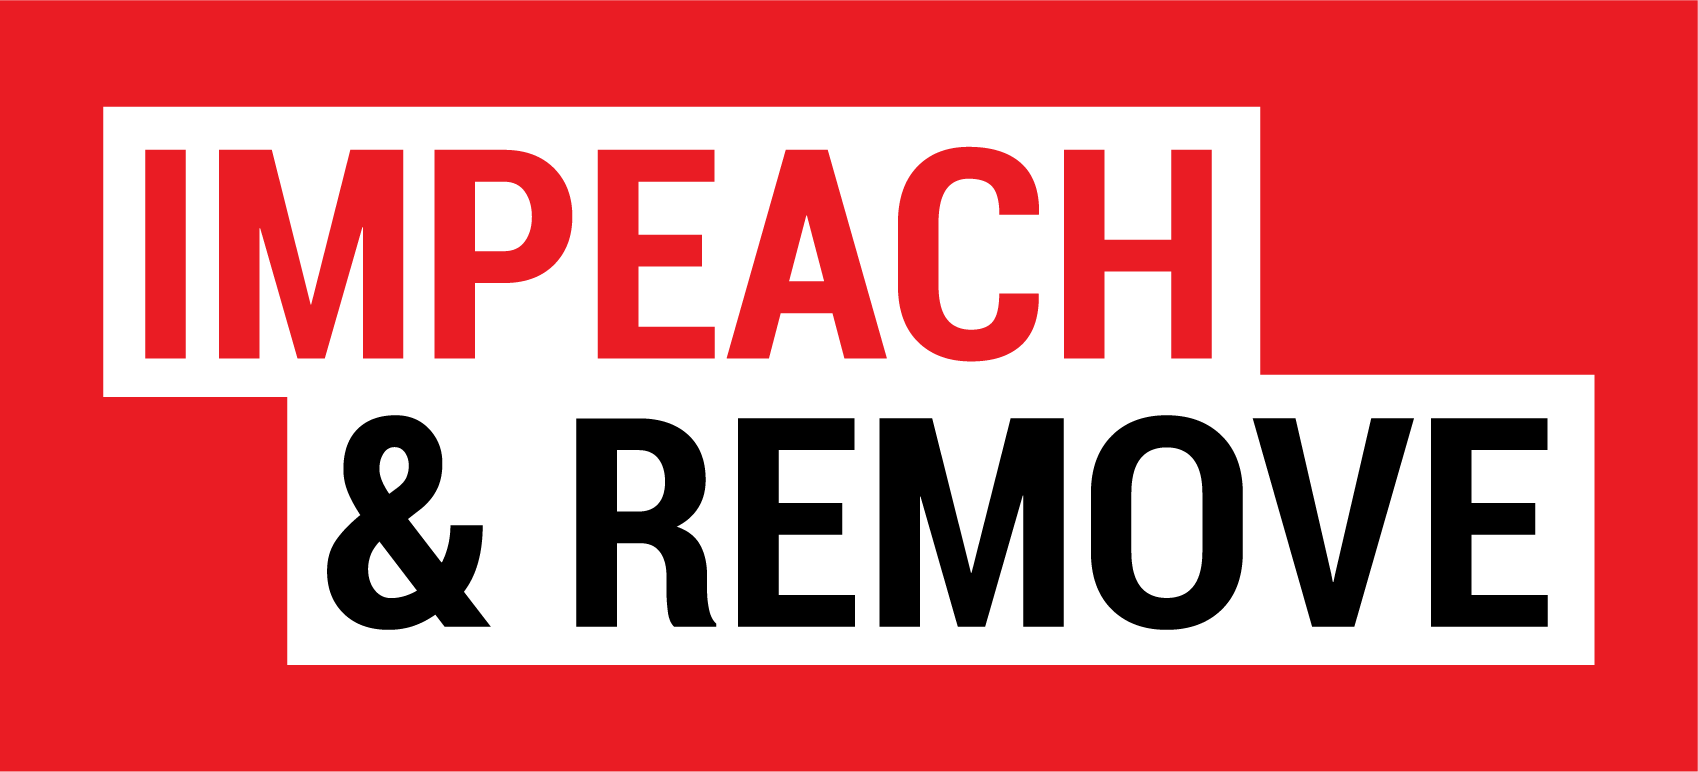 Impeach and remove logo